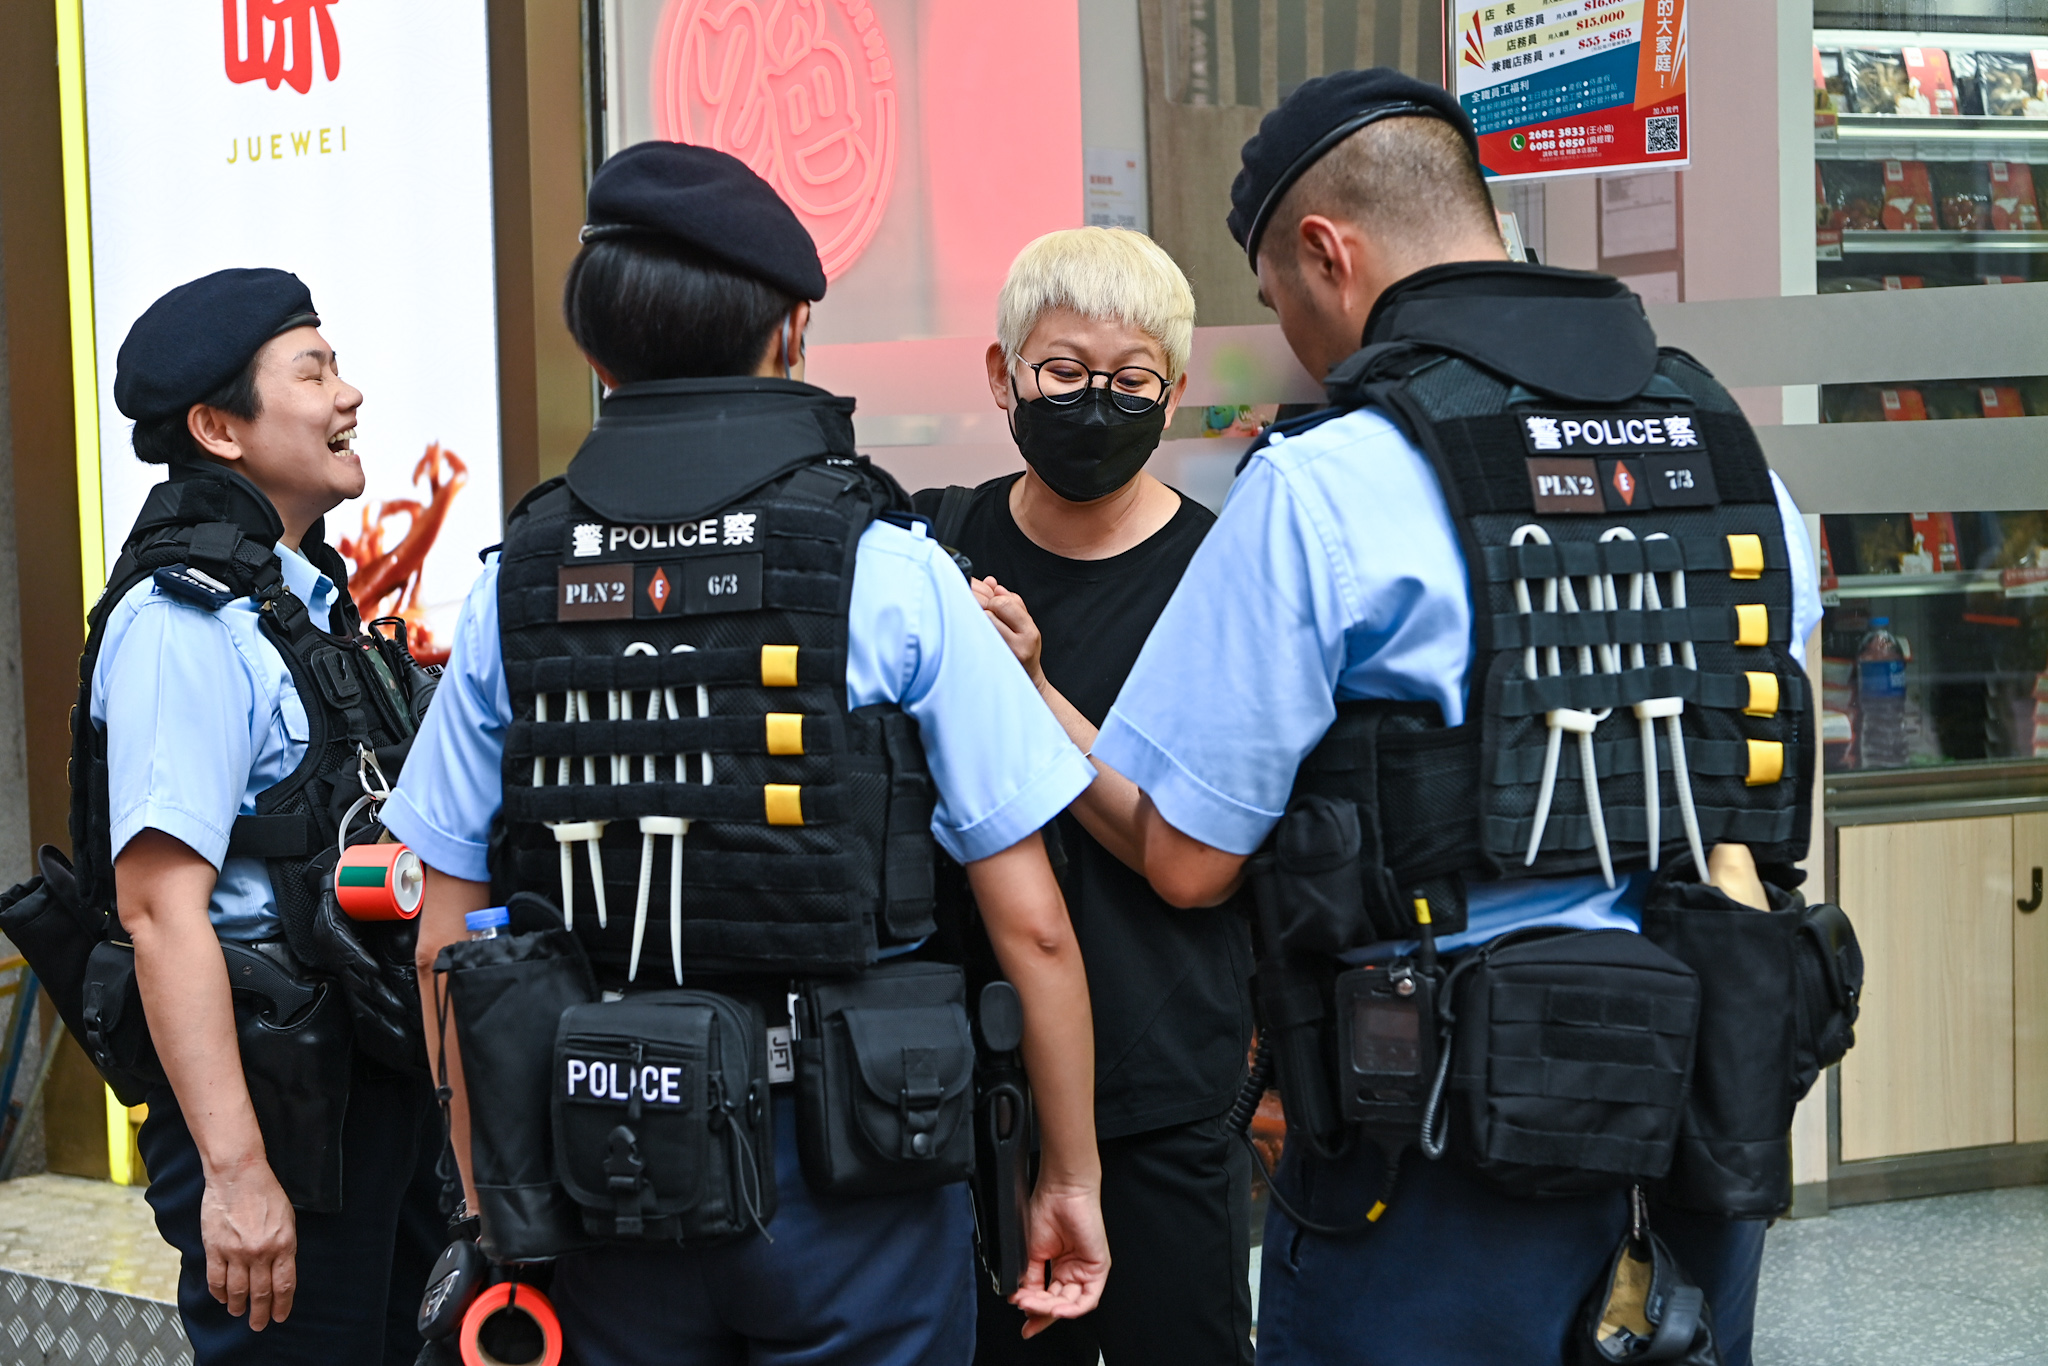 Cô Trương, một phụ nữ đeo một khẩu trang và mặc áo phông màu đen, đã bị cảnh sát chặn lại và khám xét. (Ảnh: Benson Lau/The Epoch Times)